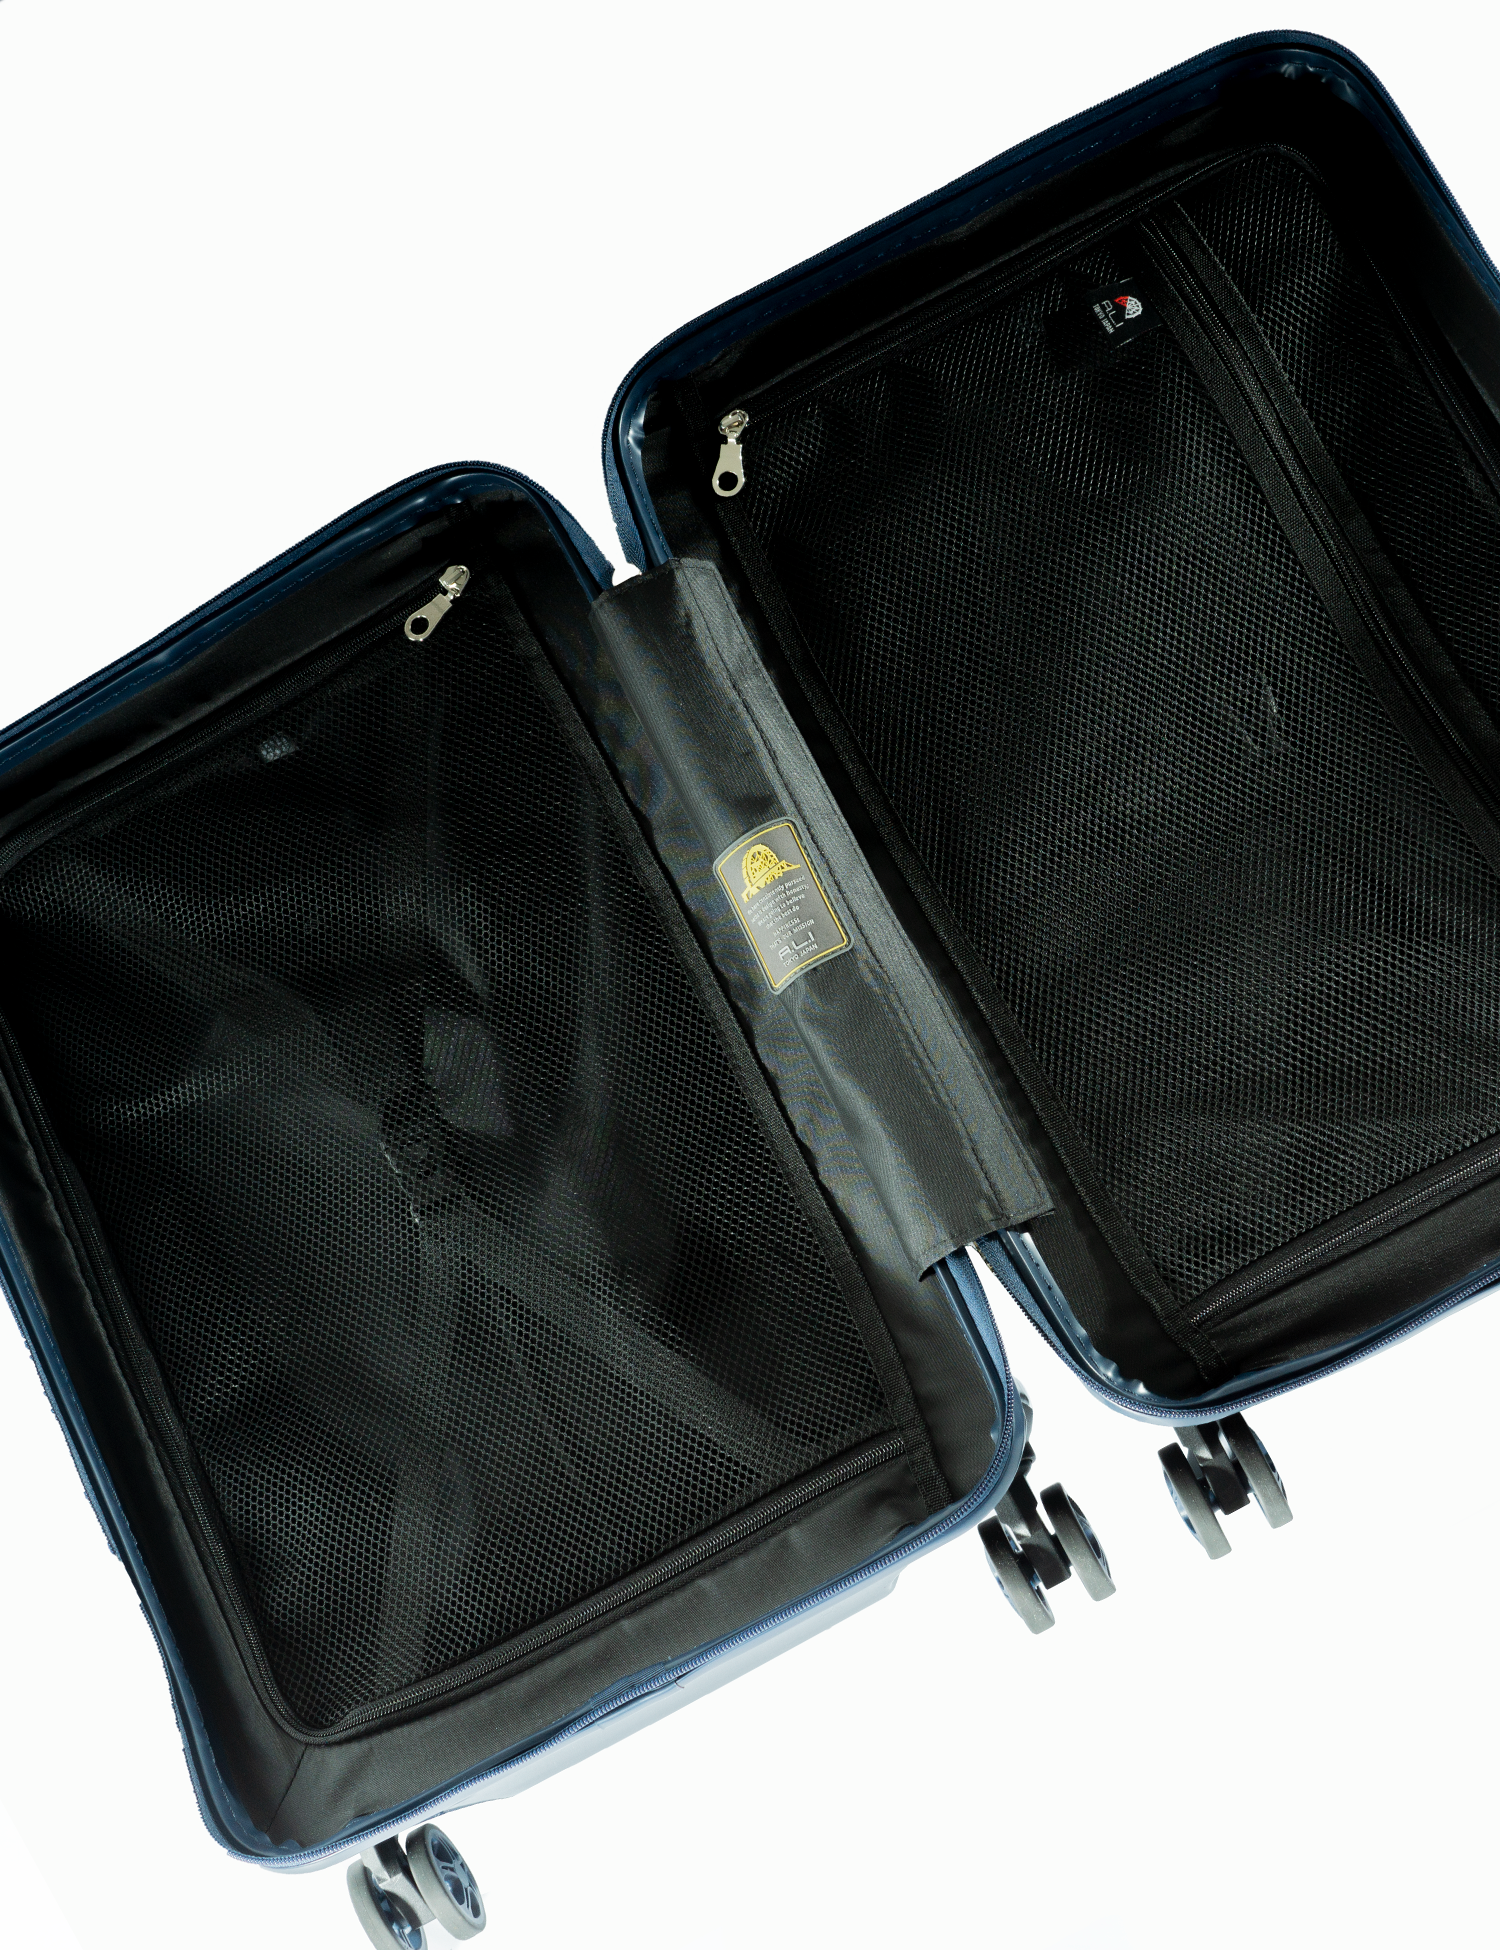 アジアラゲージのスーツケース Maxbox Ali 2511 アジア ラゲージ 公式サイト Asia Luggage